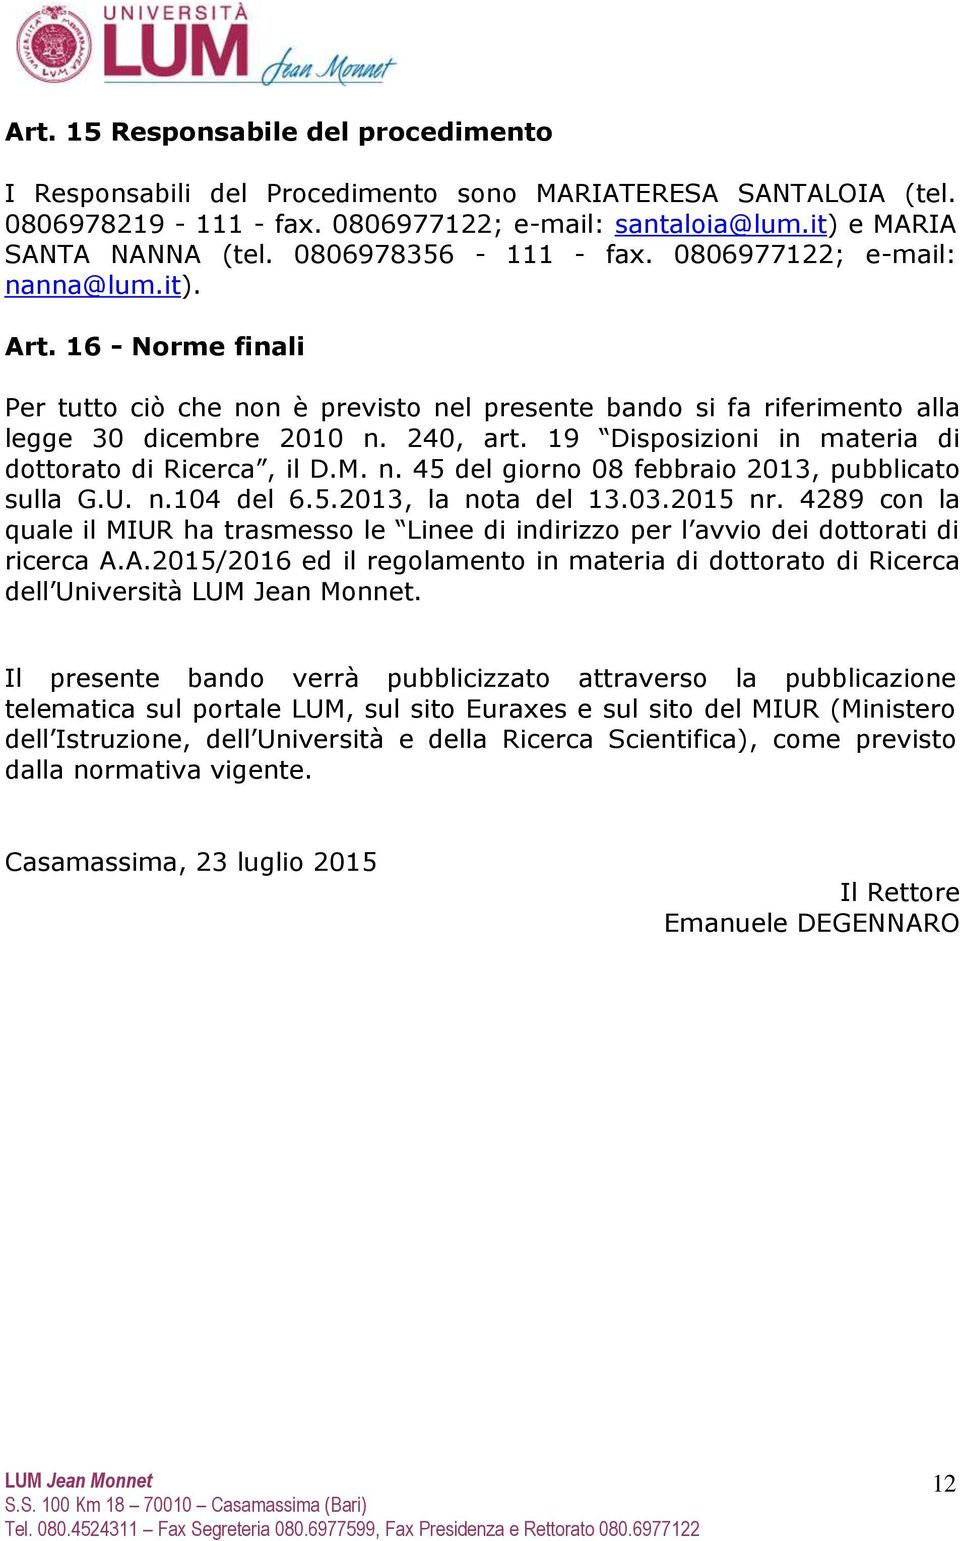 19 Disposizioni in materia di dottorato di Ricerca, il D.M. n. 45 del giorno 08 febbraio 2013, pubblicato sulla G.U. n.104 del 6.5.2013, la nota del 13.03.2015 nr.